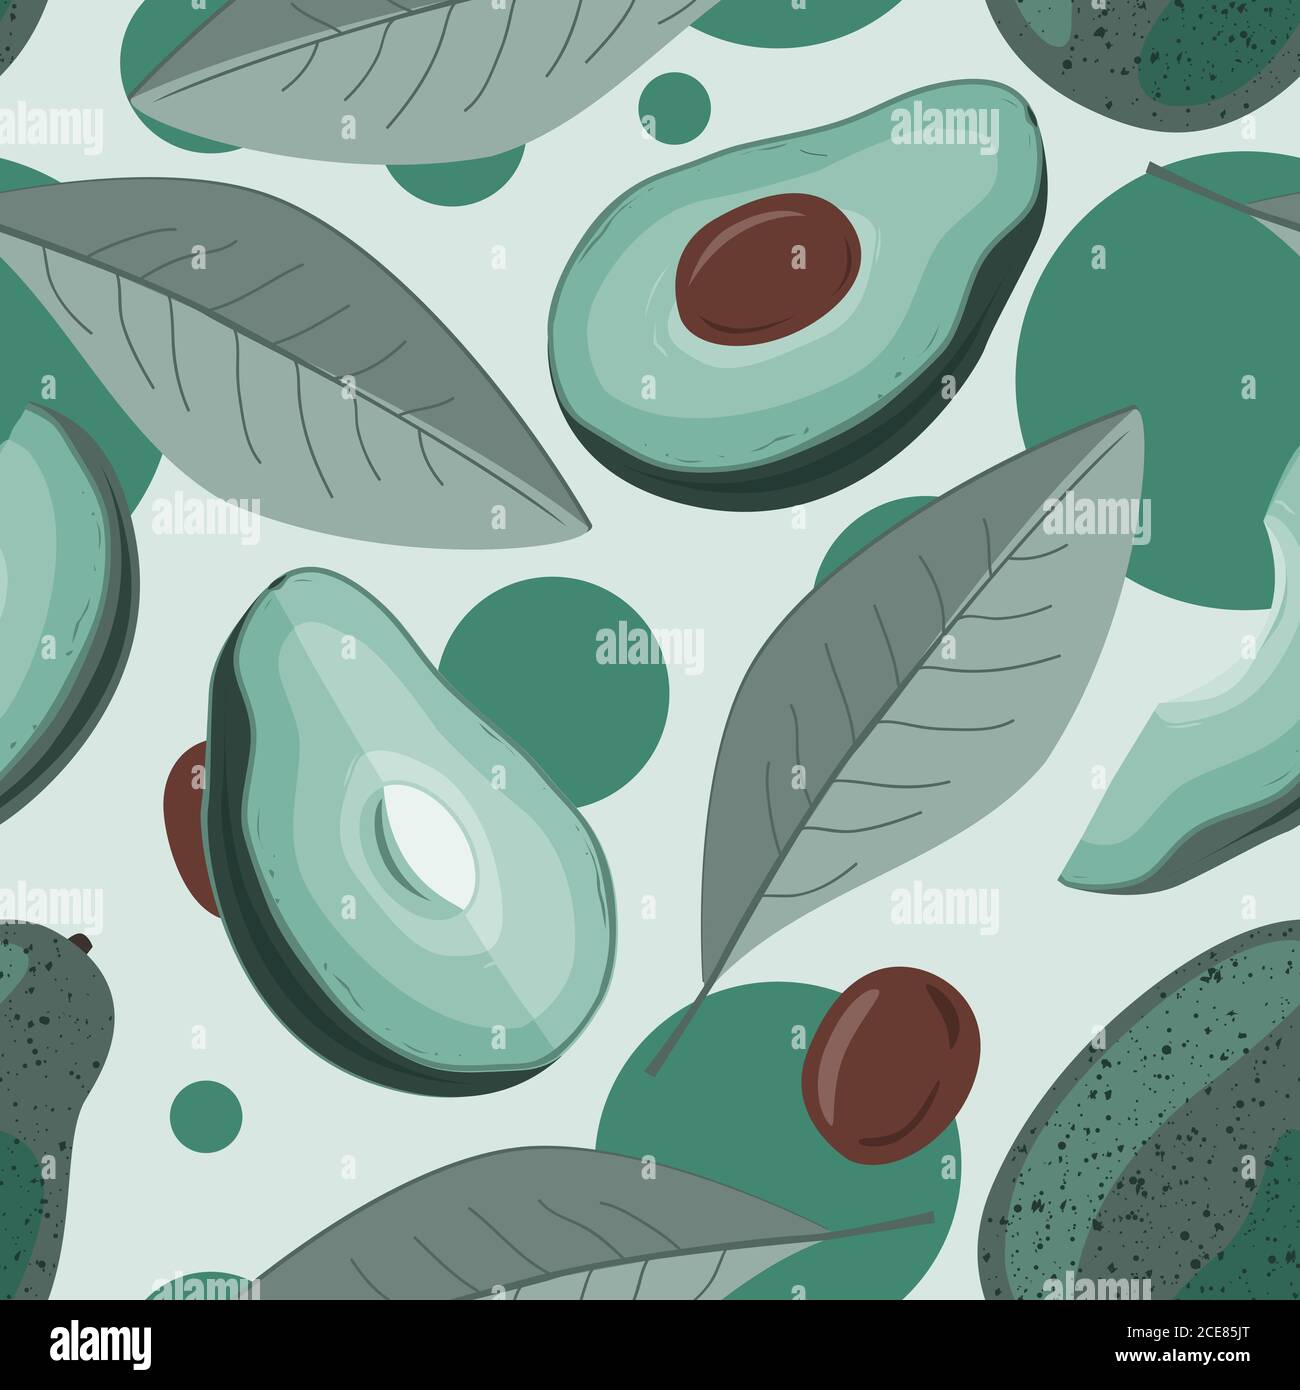 Avocado, metà avocado, e foglie di sfondo. Illustrazione vettoriale dell'avocado di frutta. Modello senza giunture Illustrazione Vettoriale